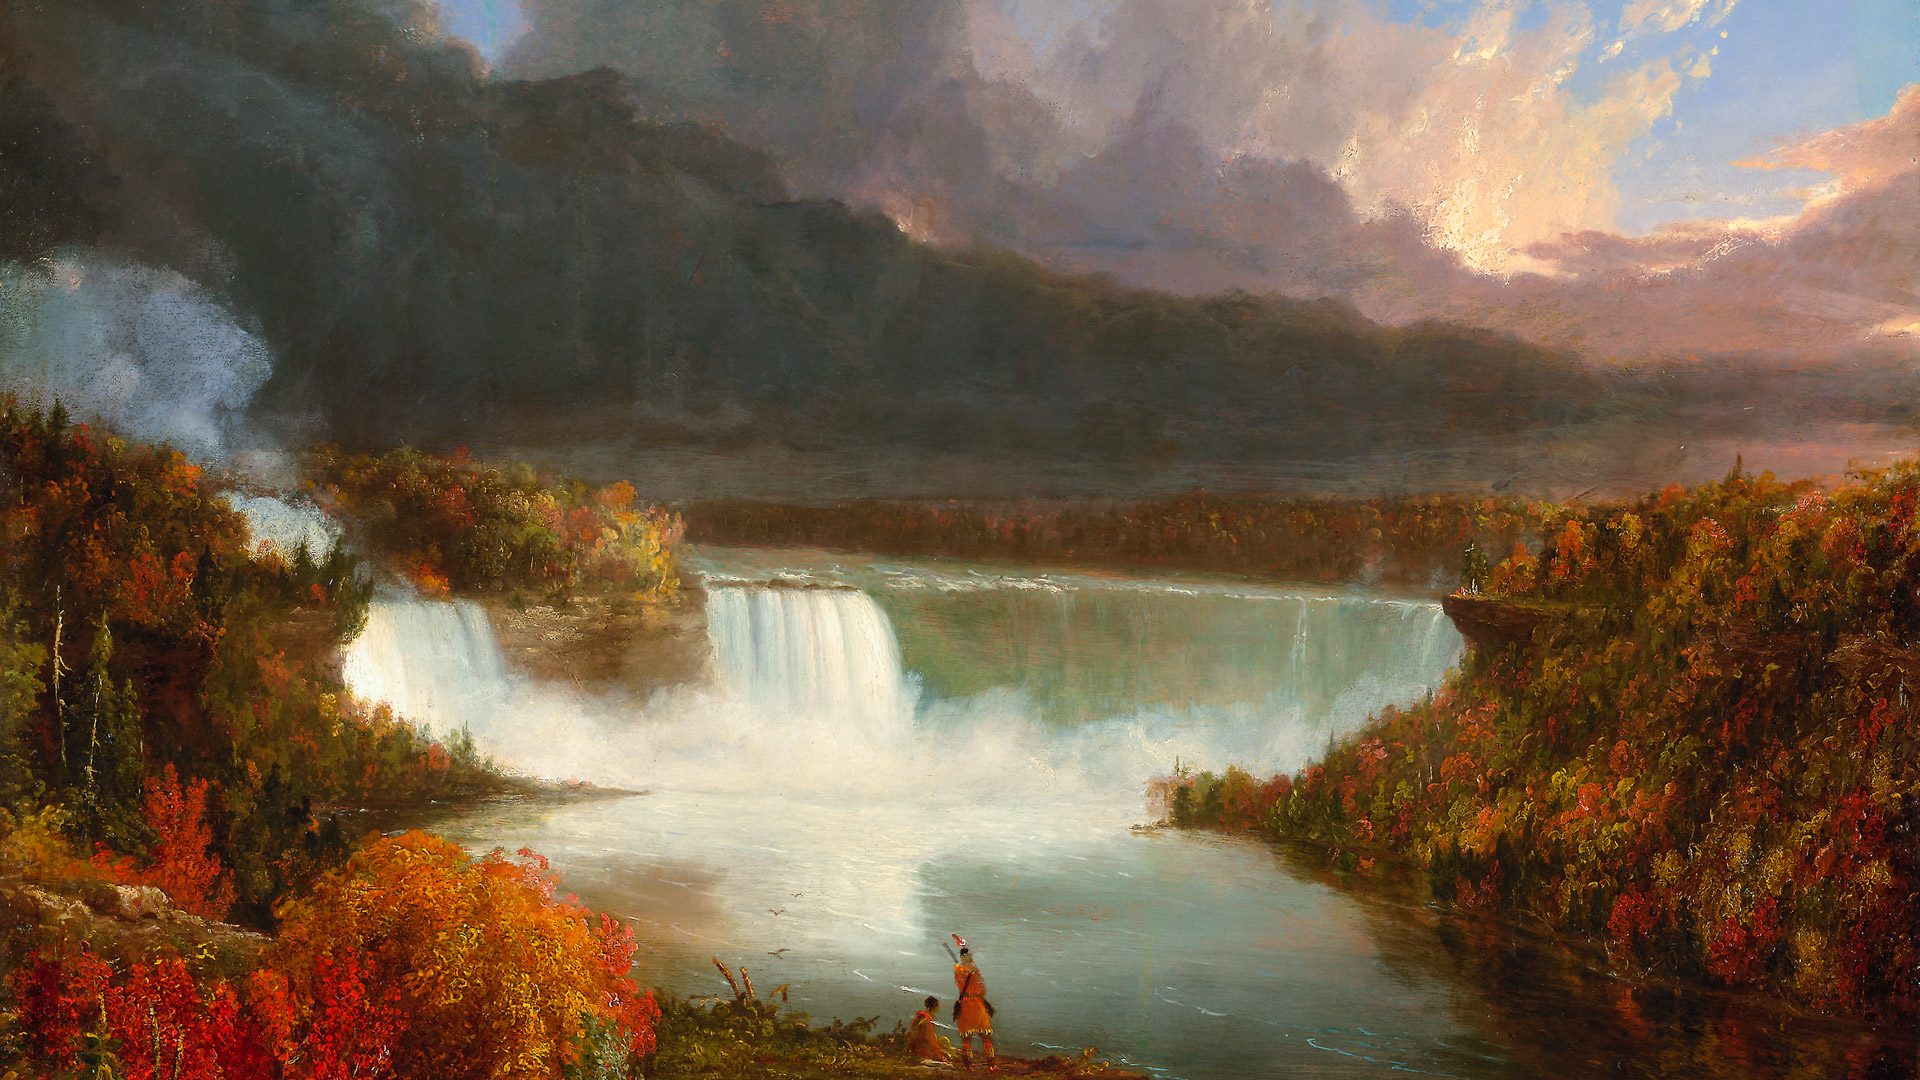 Apportez la beauté des saisons à votre bureau avec notre fond d'écran nature mettant en vedette les majestueuses chutes du Niagara en automne, et laissez votre écran devenir un portail vers la puissance impressionnante de la nature.